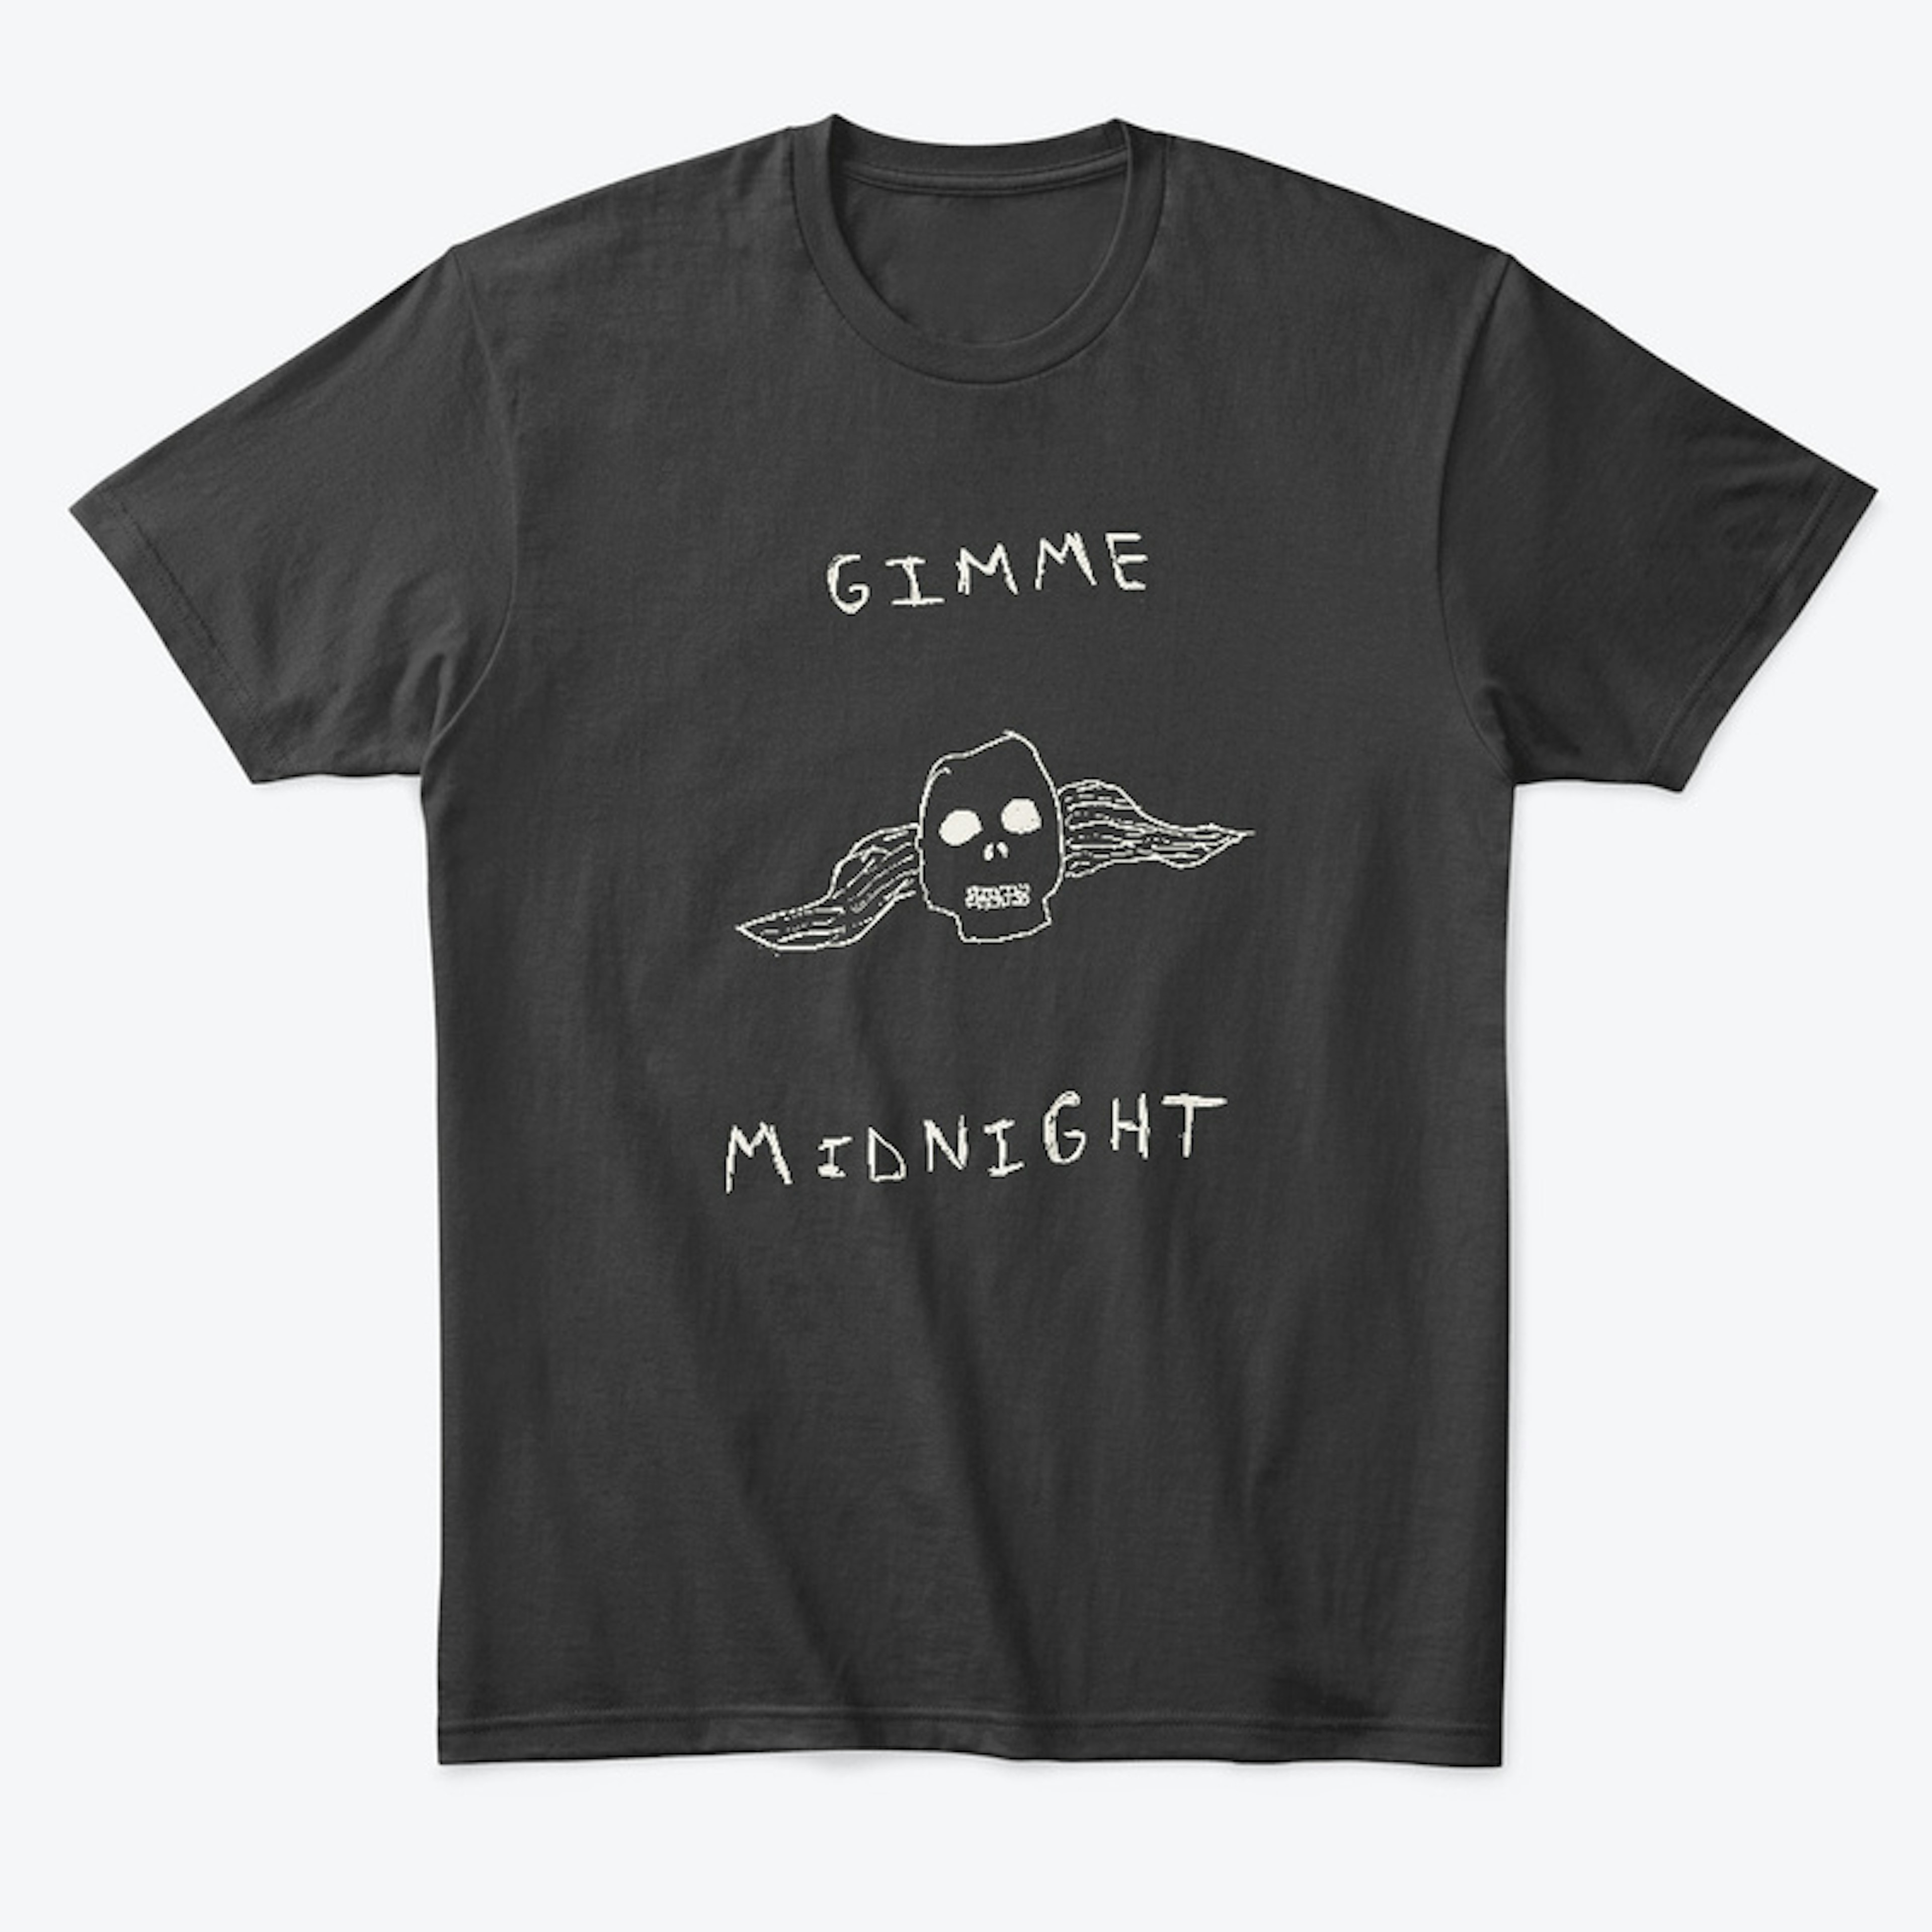 Gimme Midnight t-shirt